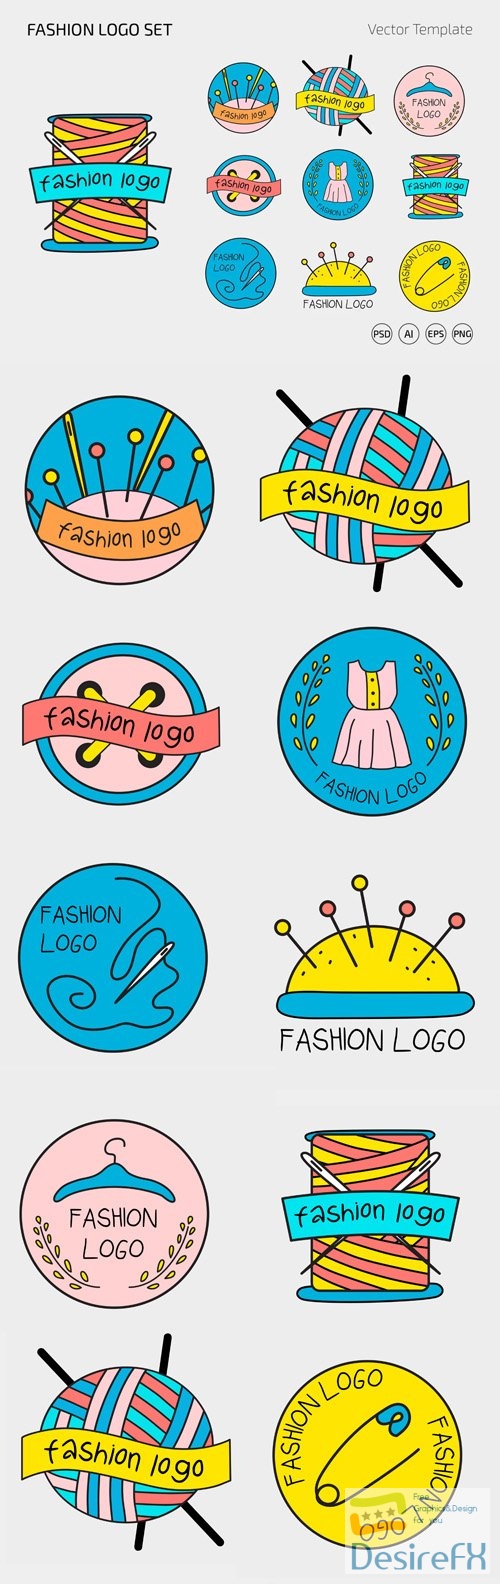 9 Fashion Logo Vector Templates + PSD